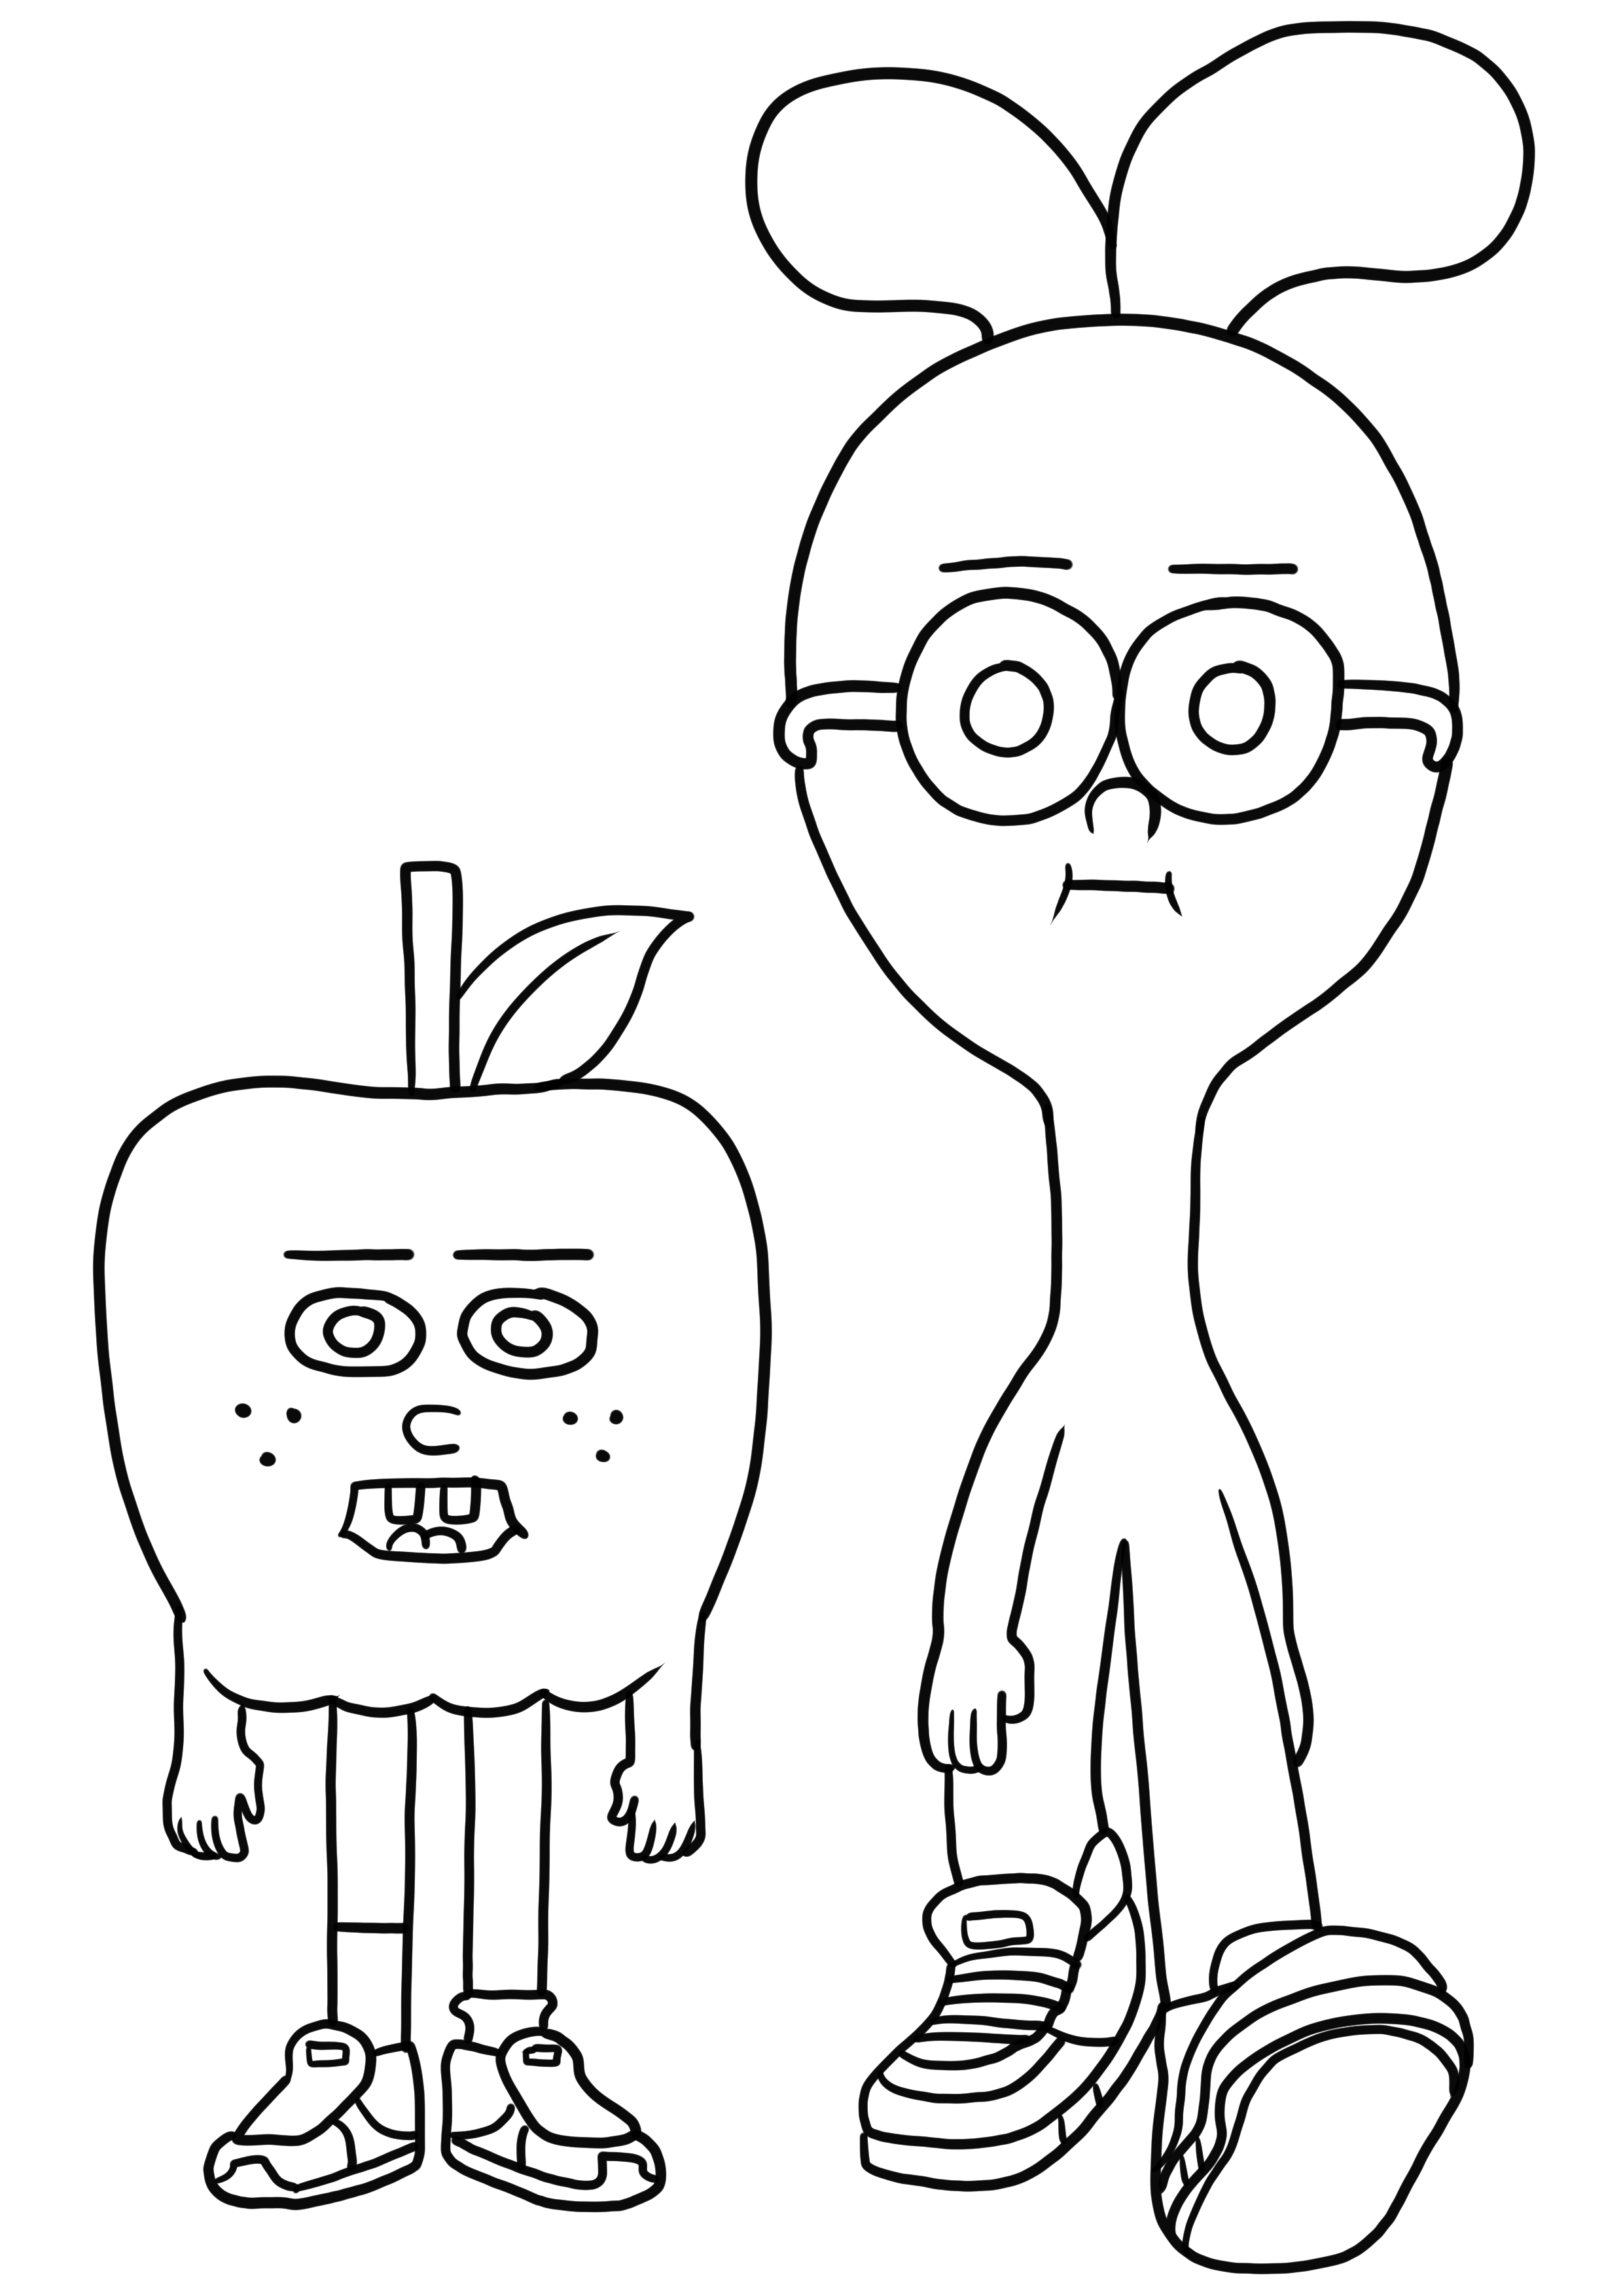 Disegno Apple & Onion 01 da stampare e colorare